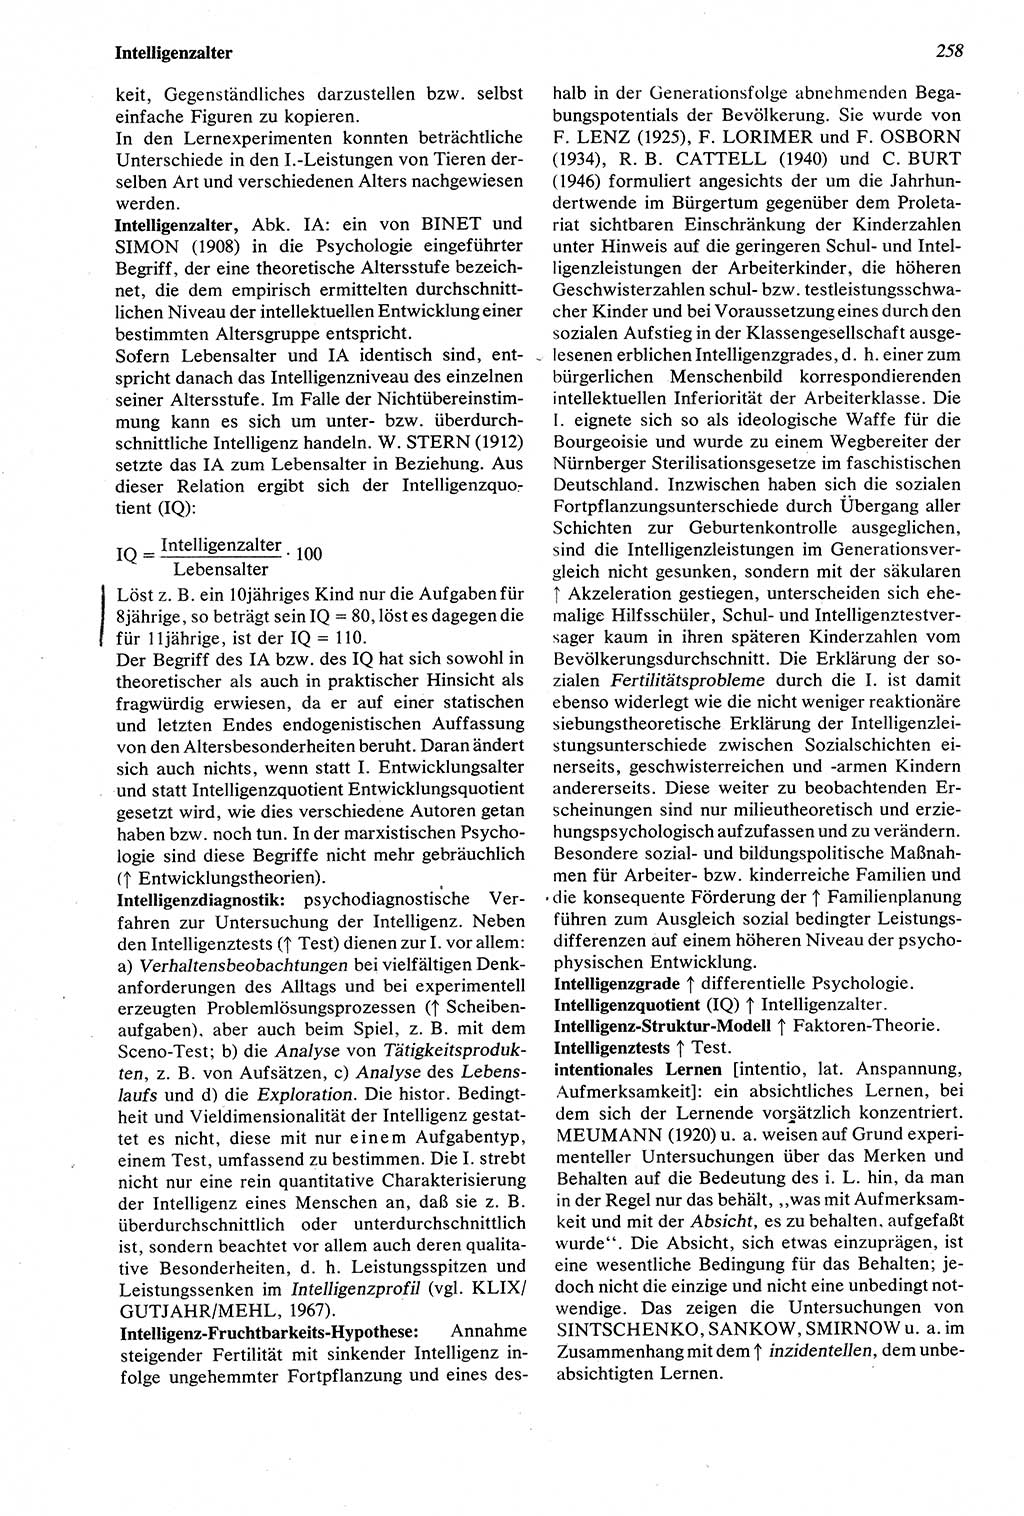 Wörterbuch der Psychologie [Deutsche Demokratische Republik (DDR)] 1976, Seite 258 (Wb. Psych. DDR 1976, S. 258)